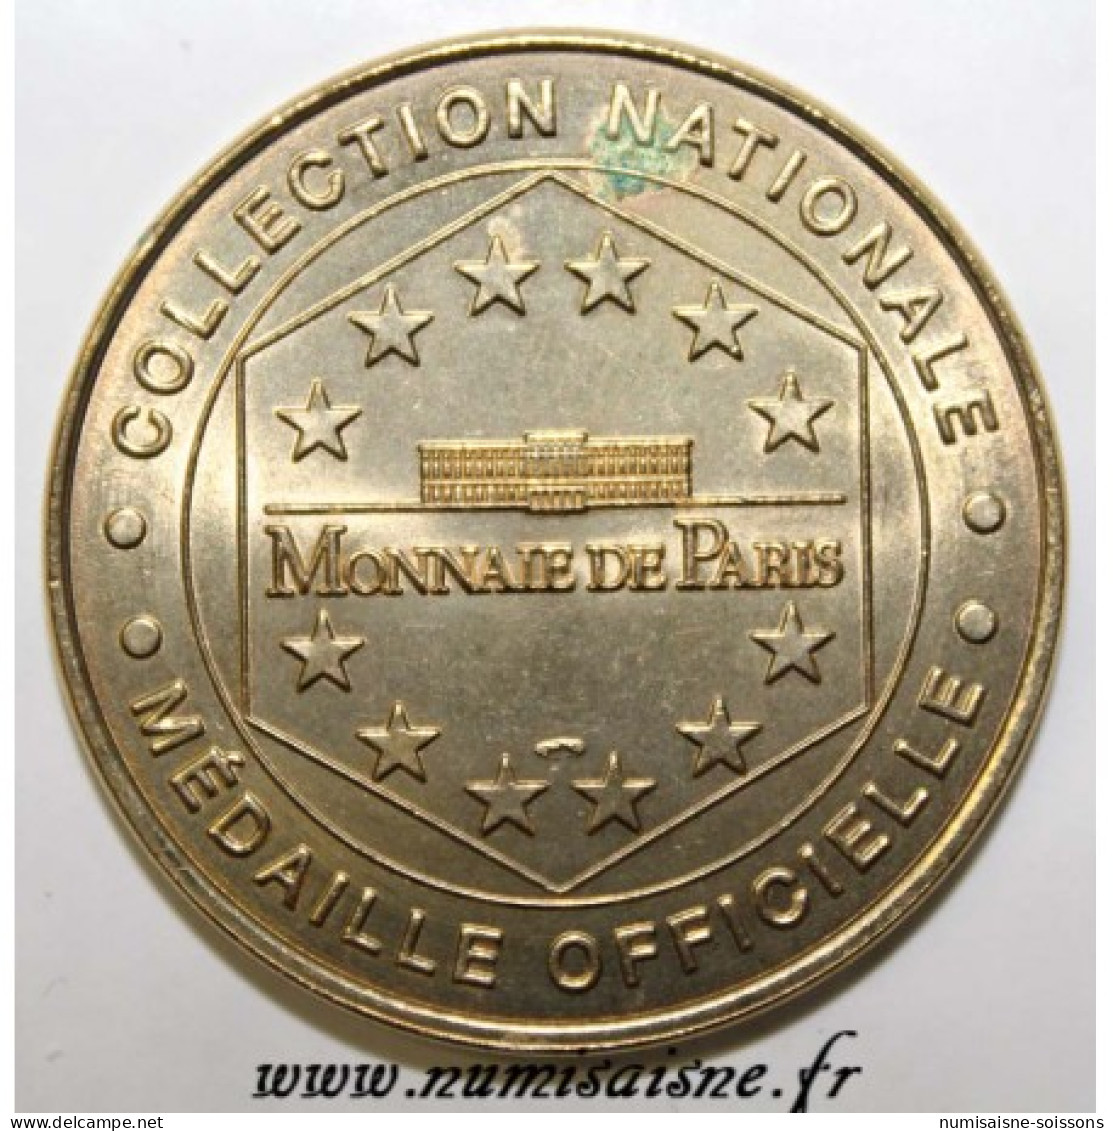 75 - PARIS - MÉNAGERIE DU JARDIN DES PLANTES - SINGE ET BOUQUETIN - Monnaie De Paris - 1999 - SPL - Zonder Datum